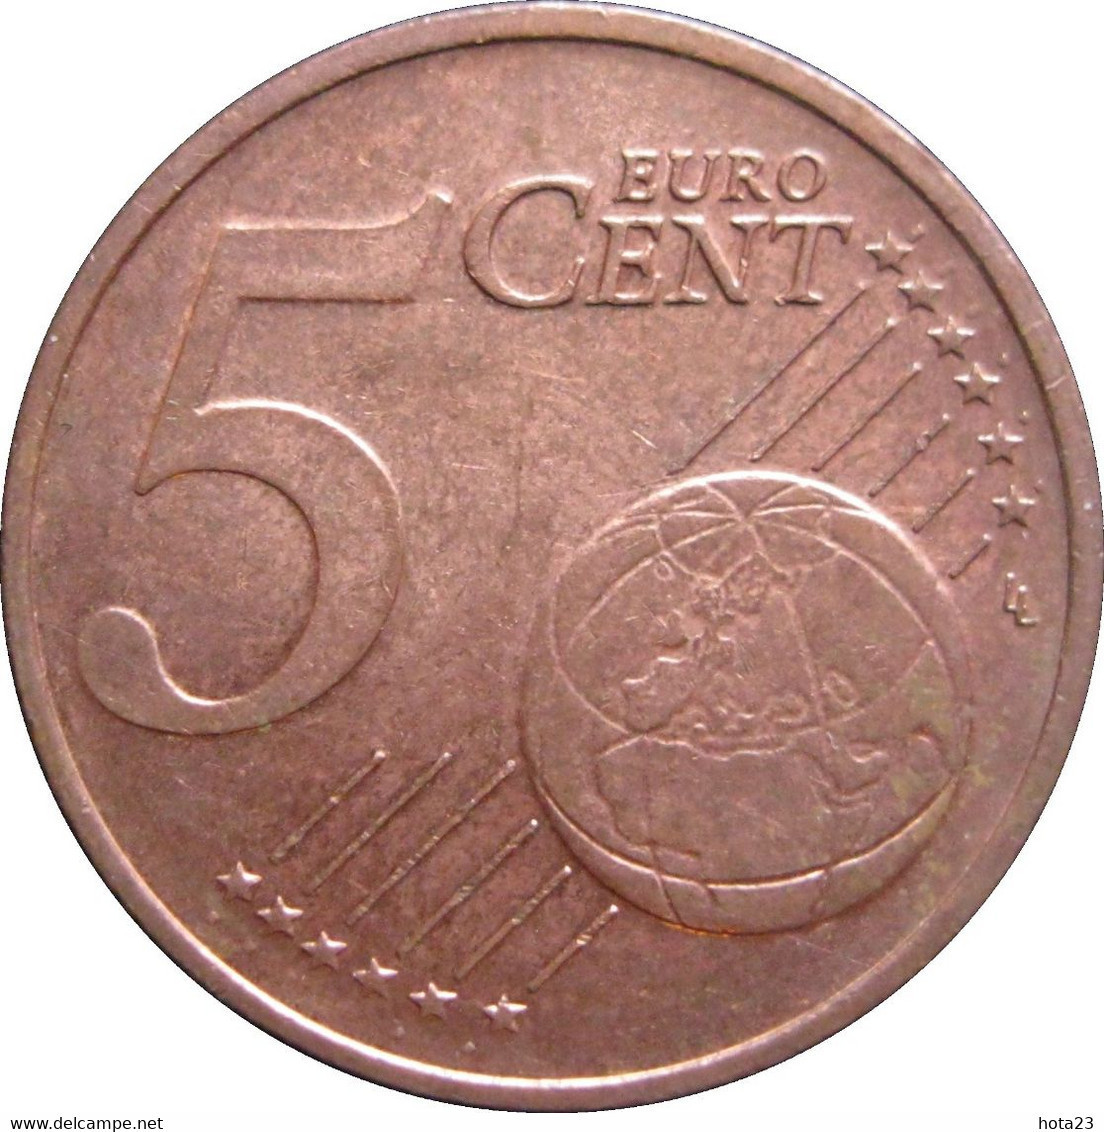 Cyprus : CHYPRE 5  EURO  Cent 2011   EIRO CIRCULEET COIN - Chypre